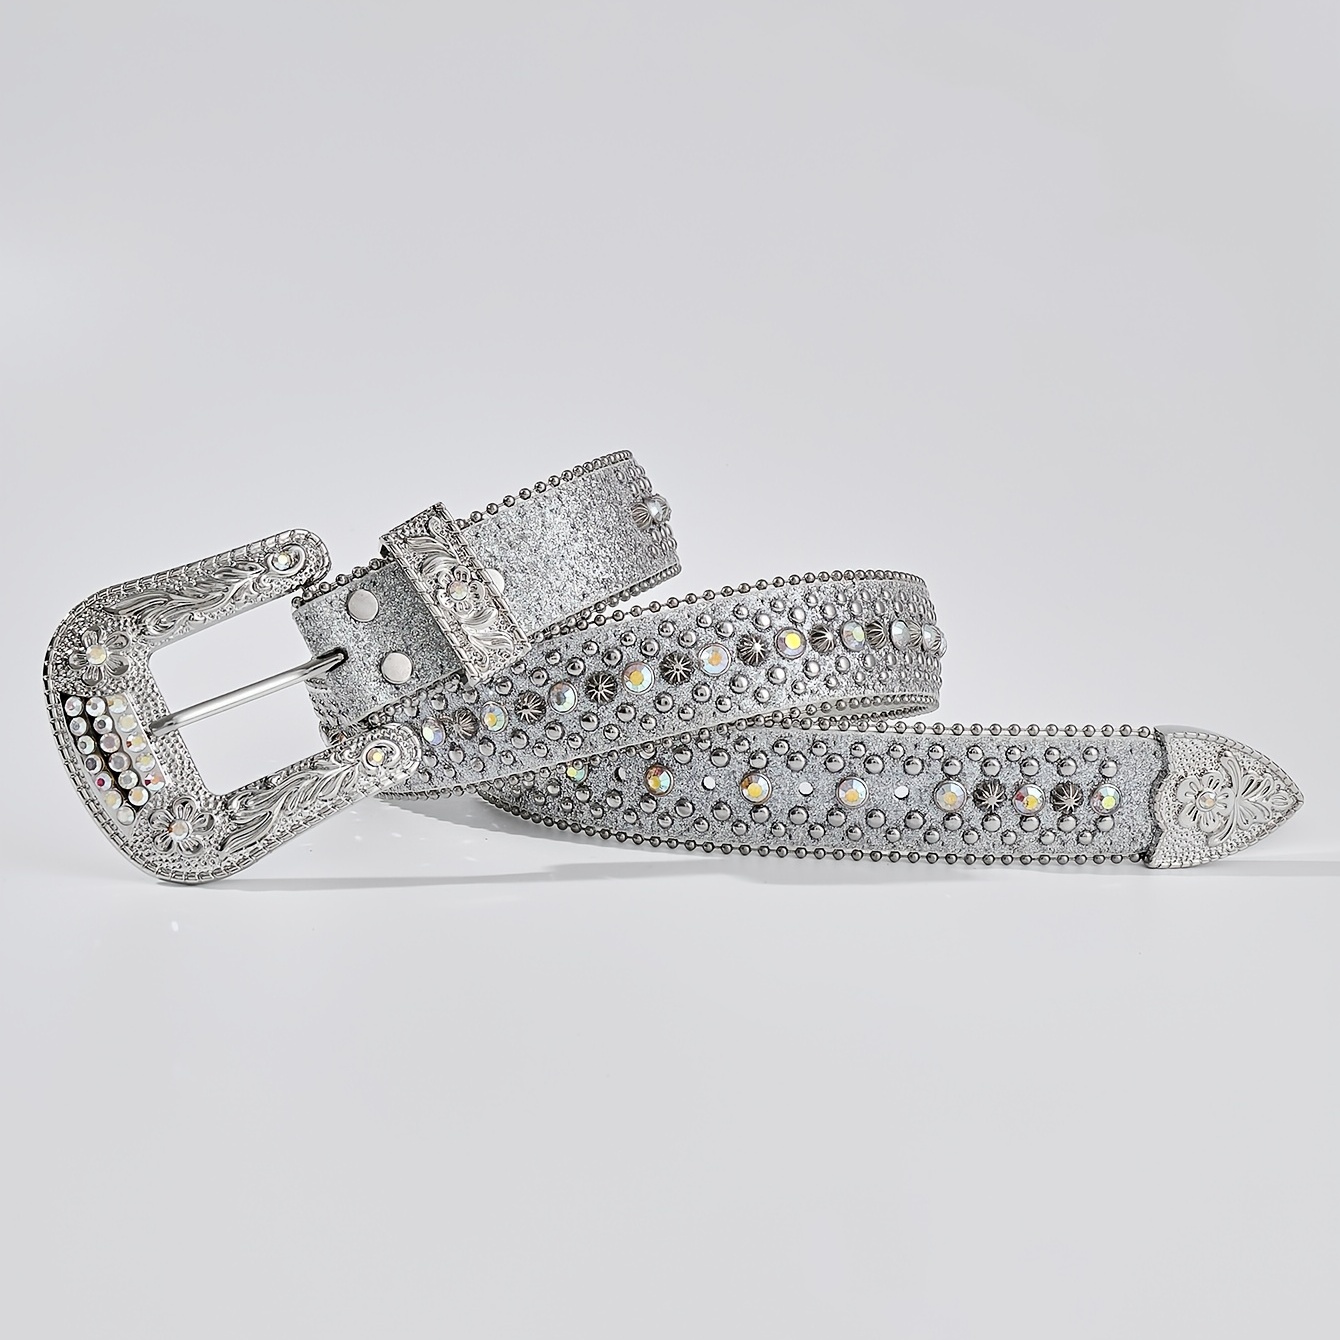  Haitpant Luxury Rhinestones Belt Cowboy Belts For Women Man  Crystal Designer Diamond Studded Belt : Clothing, Shoes & Jewelry